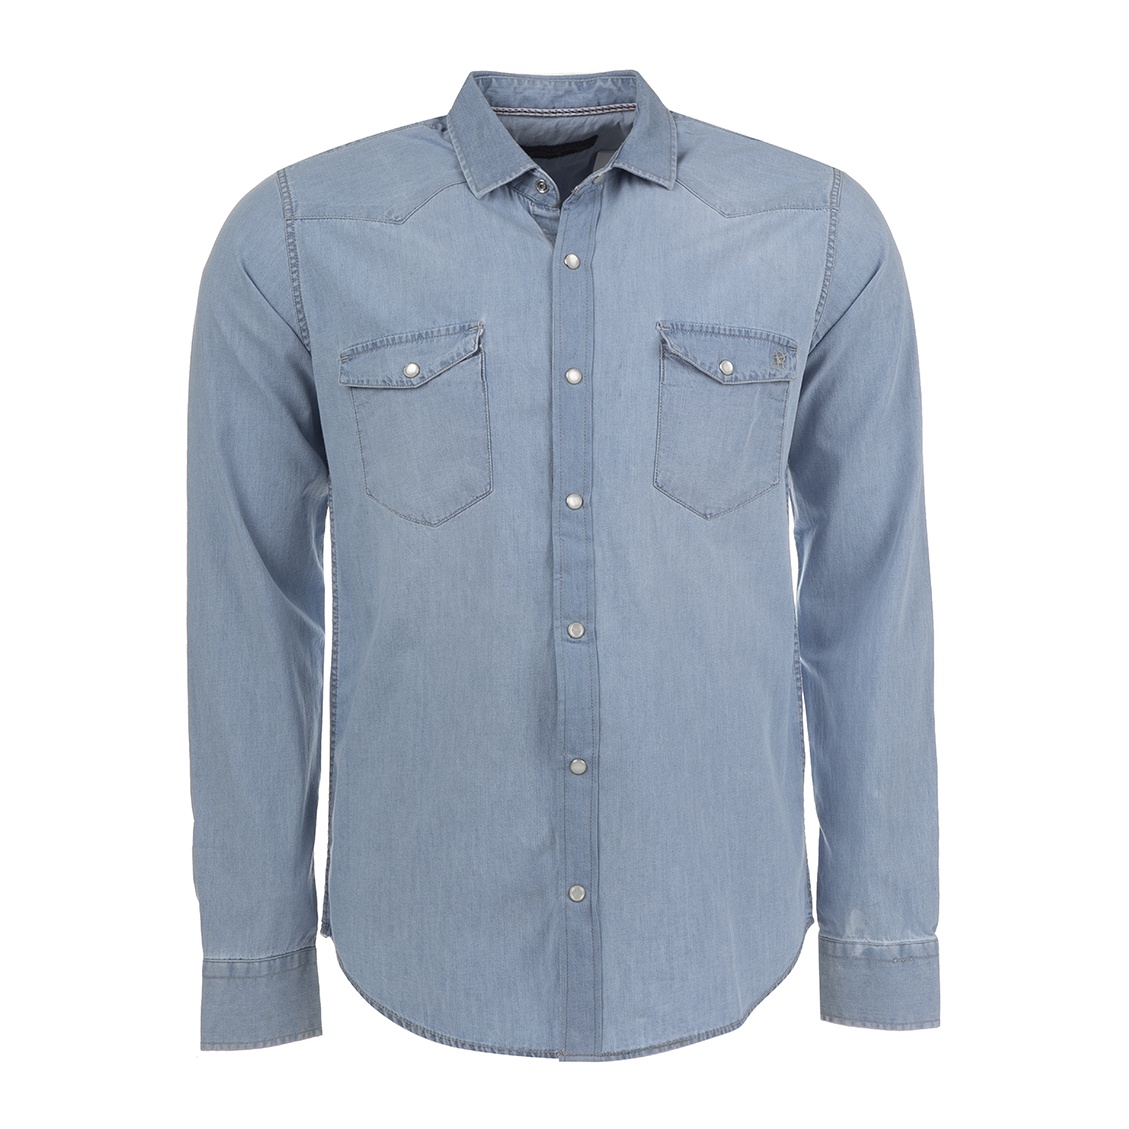 پیراهن مردانه سیاوود مدل SHIRT-JEAN-62820 کد J2003 رنگ آبی